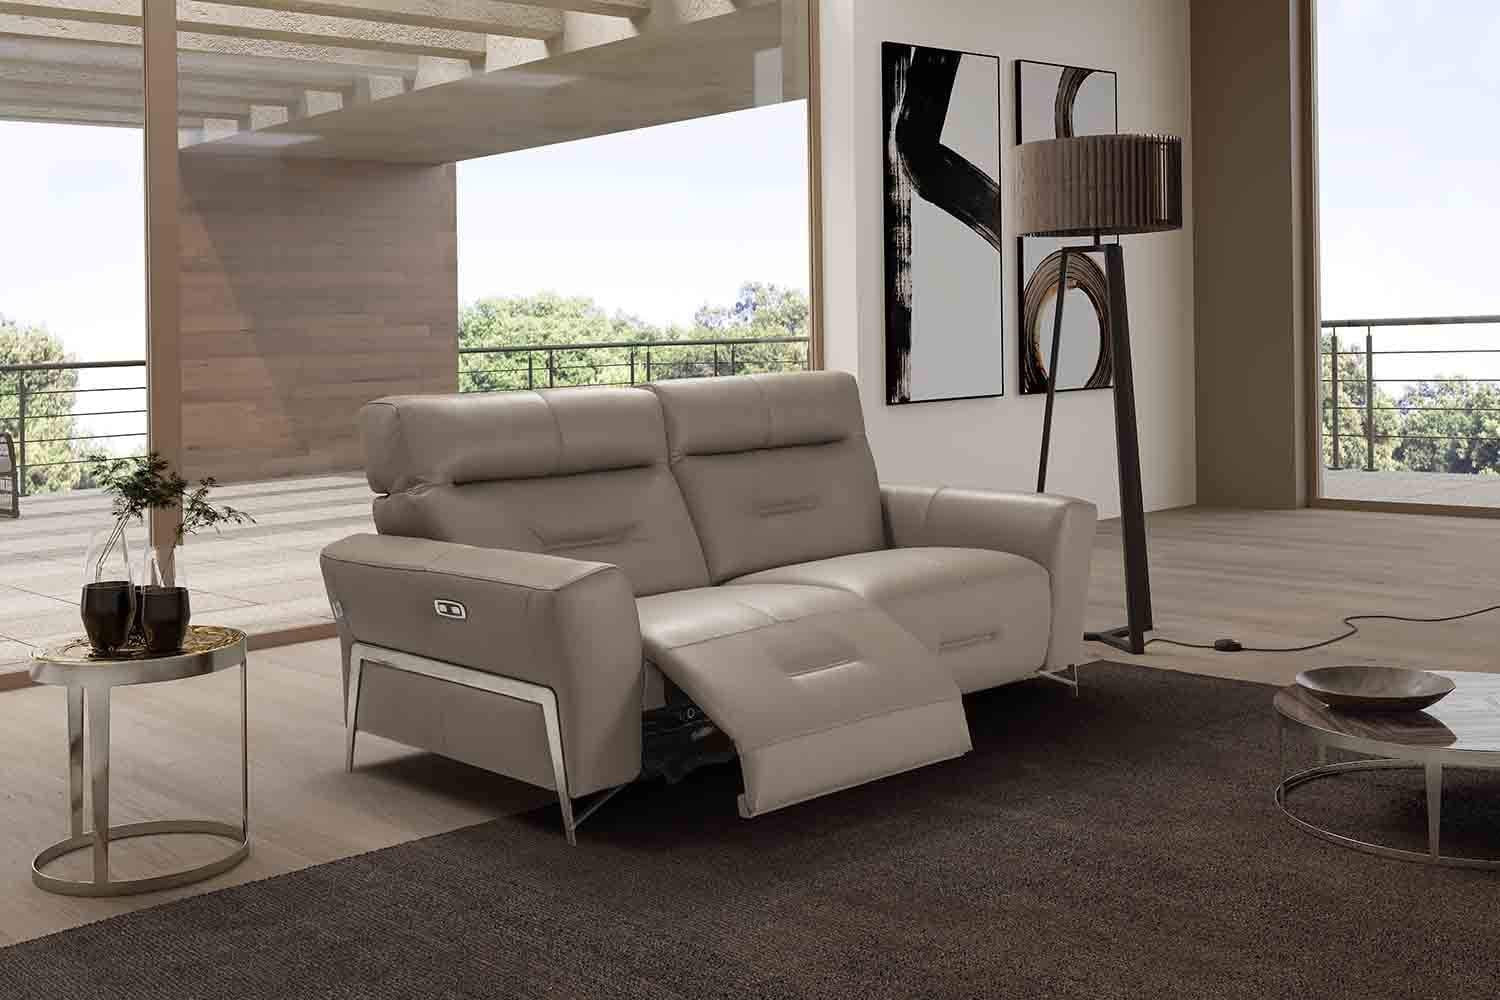 Incanto Italian Attitude Couches & Sofa I779 Reclining Leather Sofa